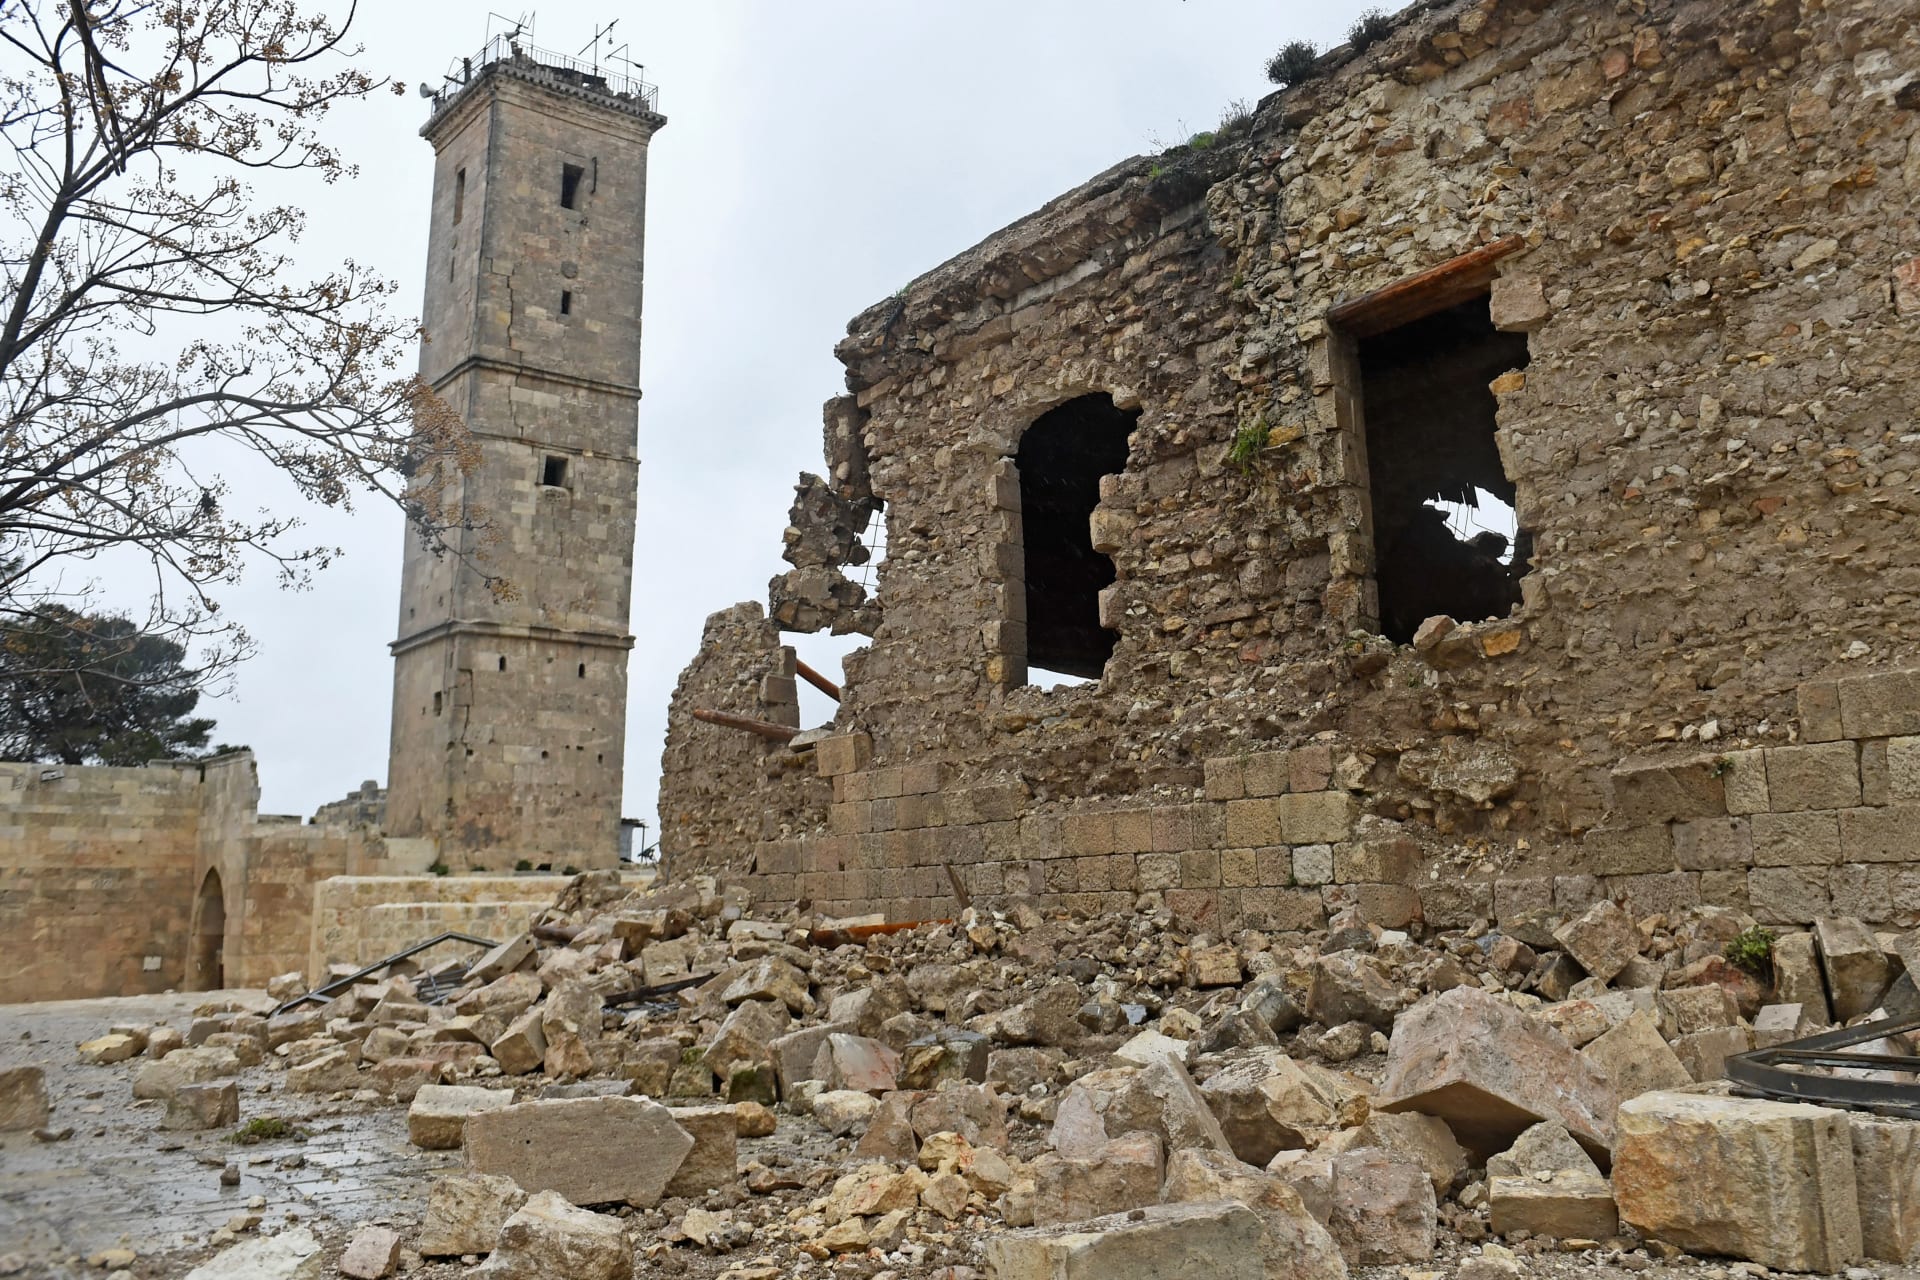 "يونسكو" مستعدة لإنقاذ المواقع التاريخية المتضررة من الزلزال في سوريا وتركيا